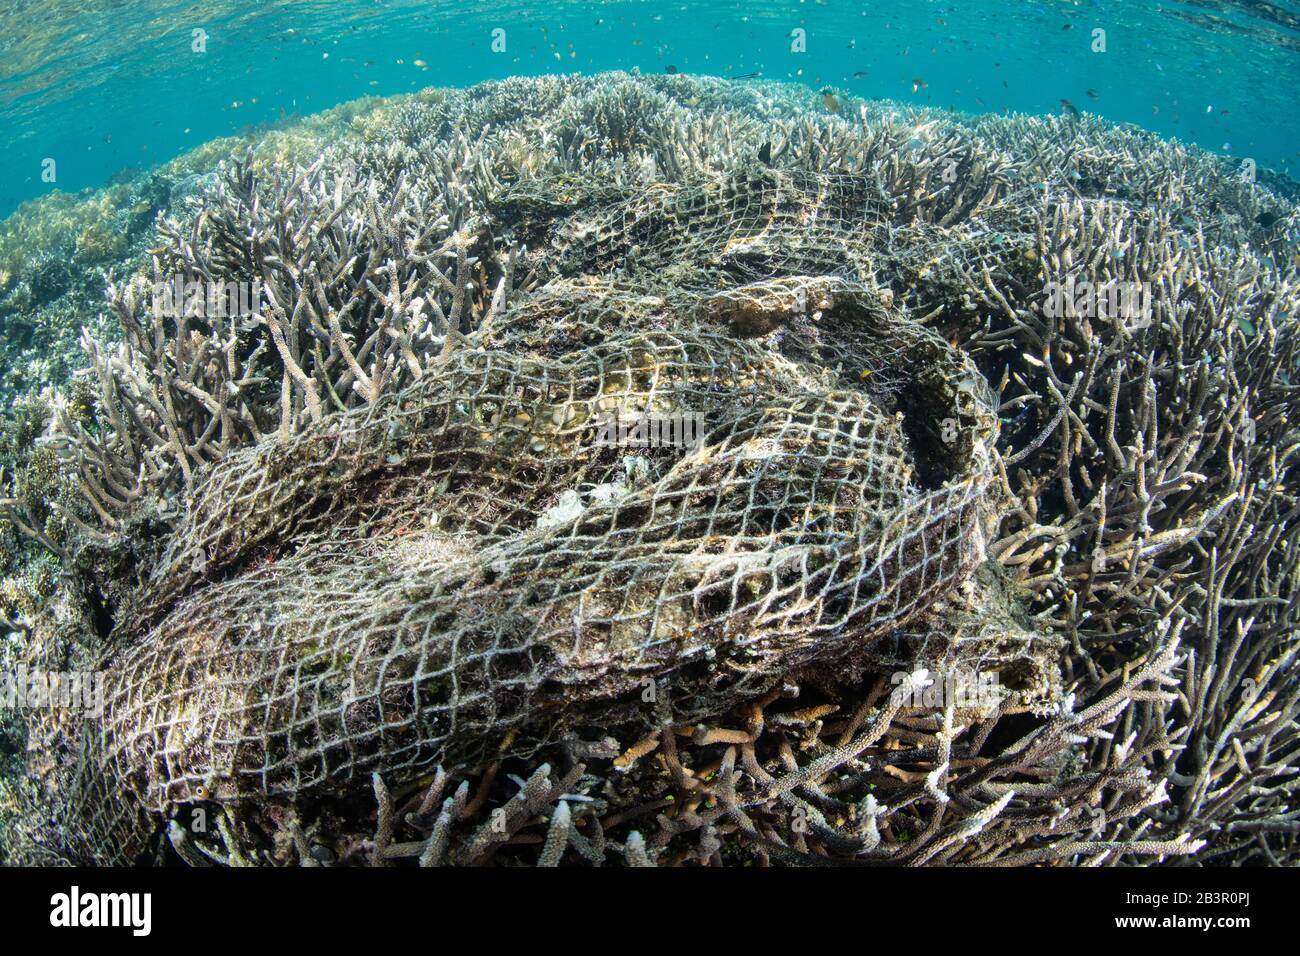 Un enorme rete di pesca scartata è diventato aggrovigliato in una barriera corallina poco profonda in Raja Ampat, Indonesia. Le reti fantasma recherebbe molti danni ambientali. Foto Stock